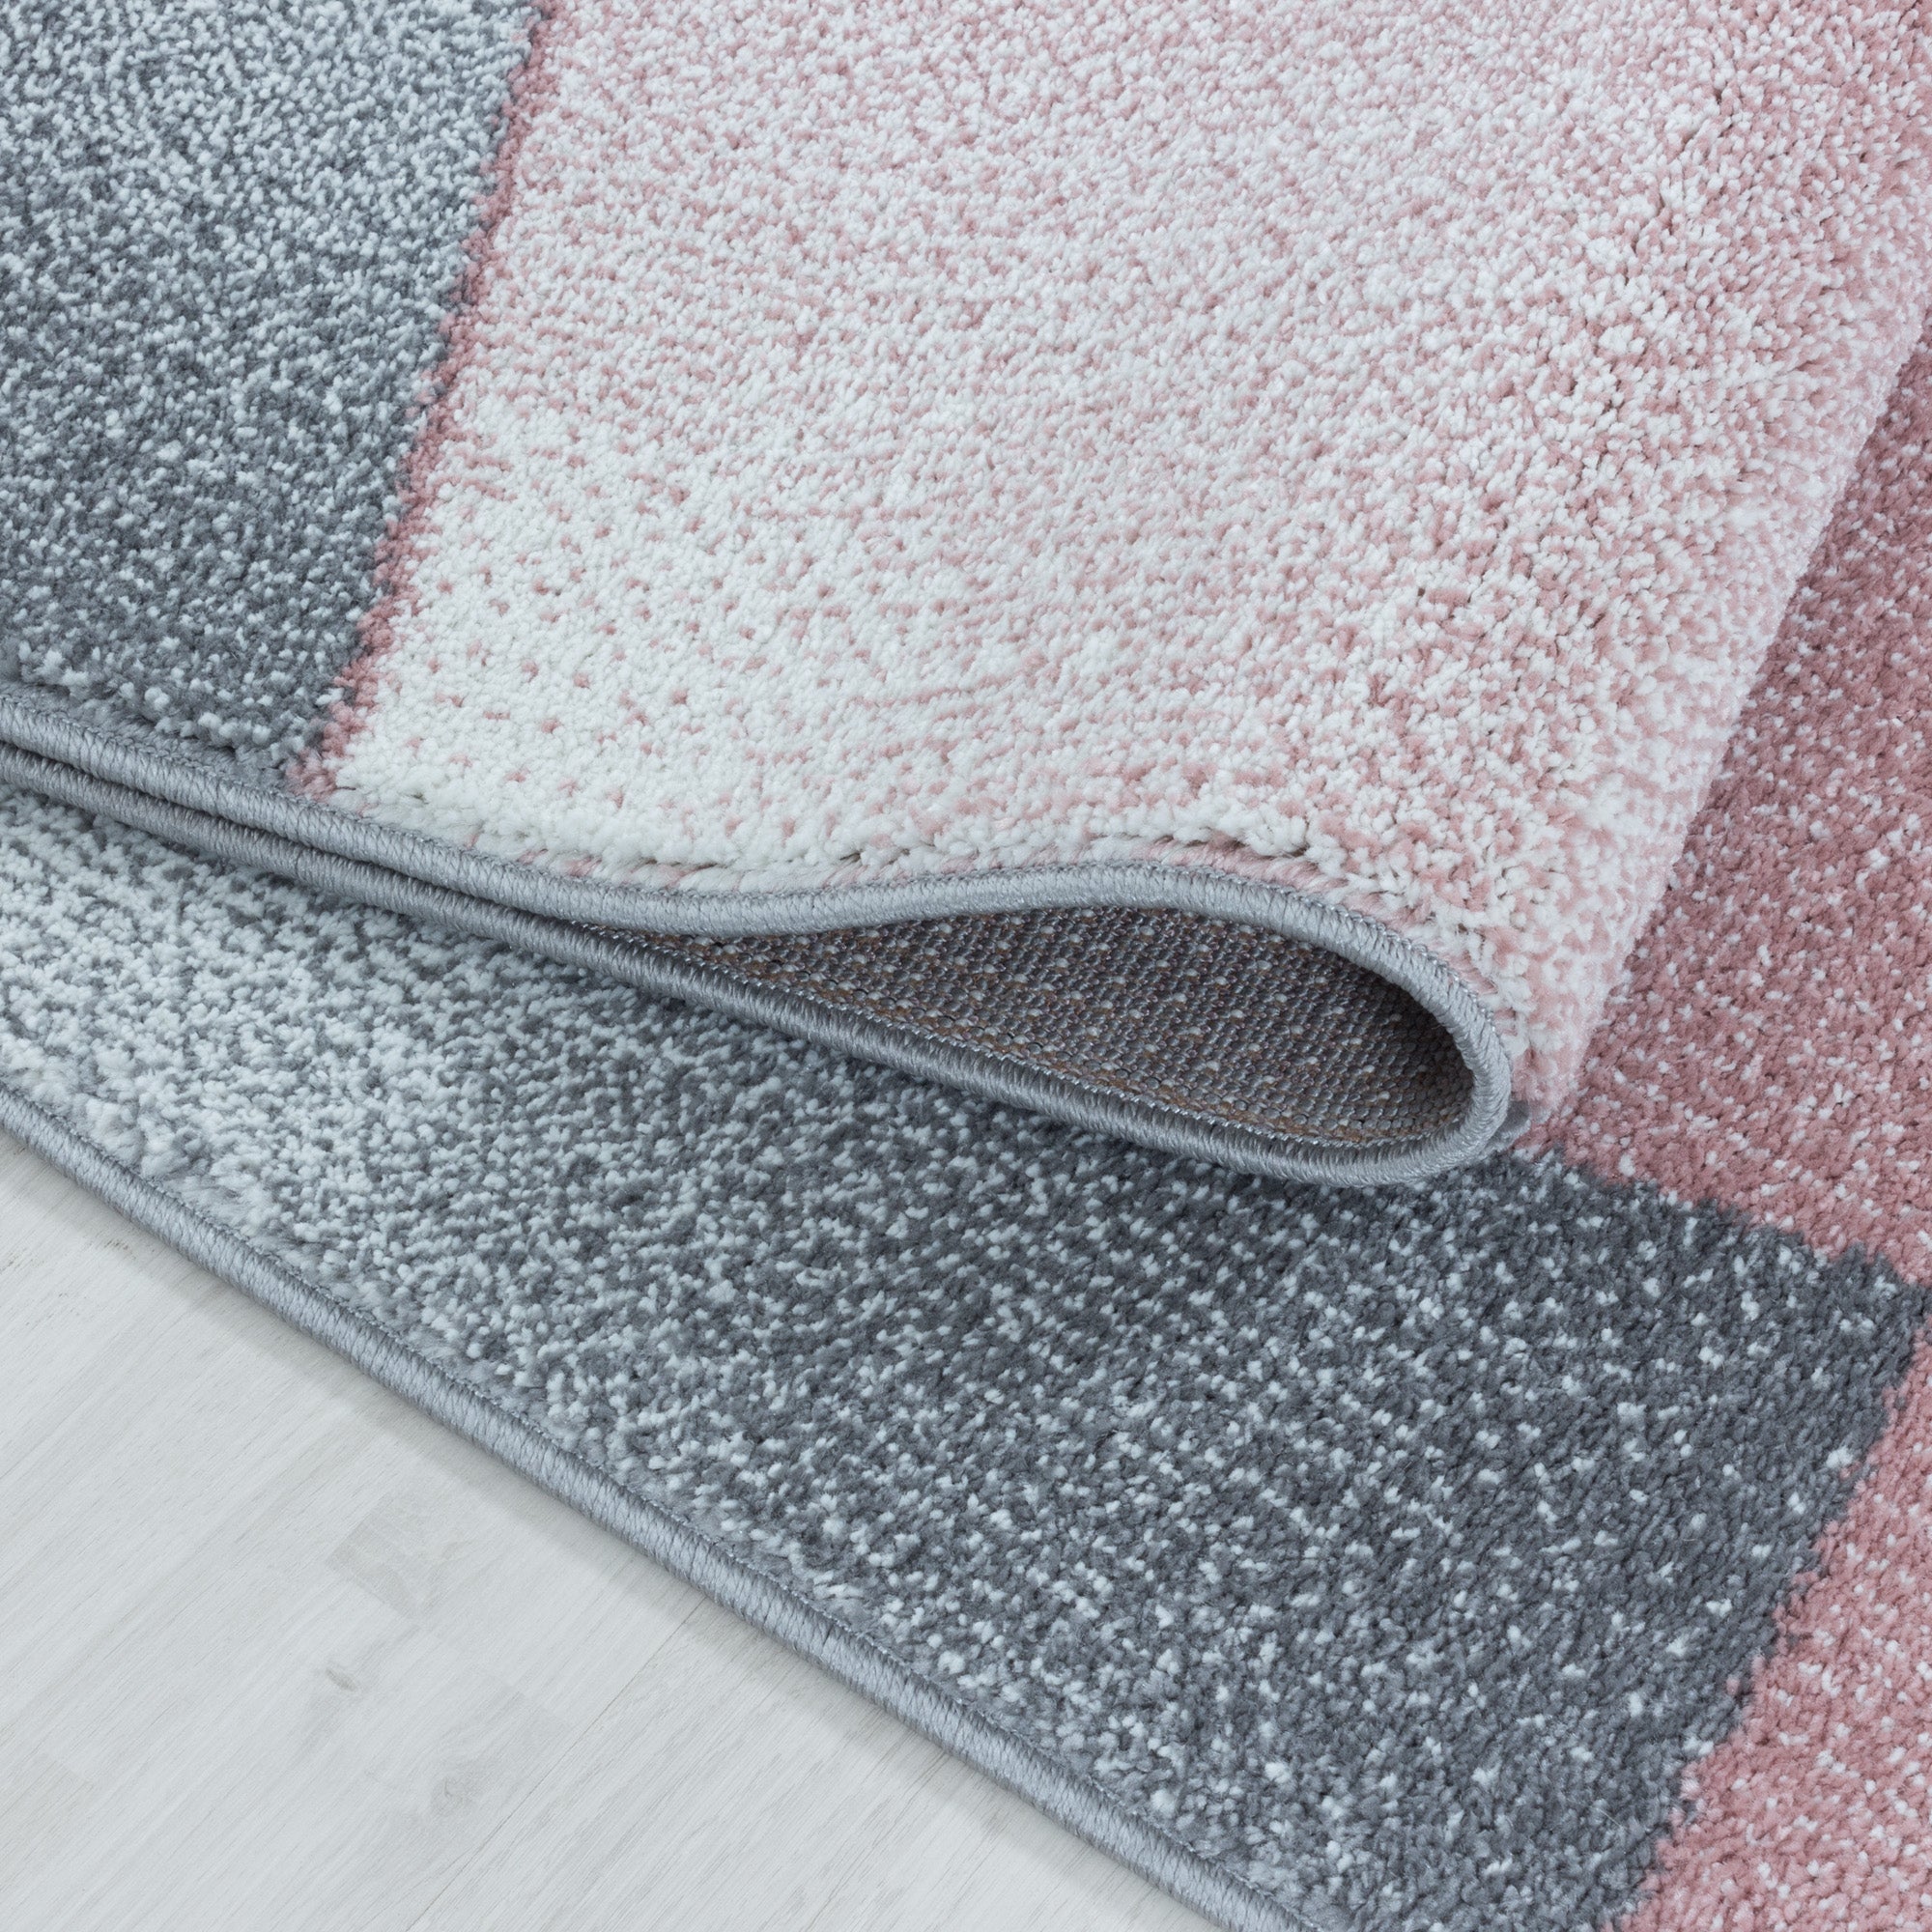 Kurzflor Teppich Rosa Grau Design Abstrakt Geometrisch Wohnzimmerteppich Weich